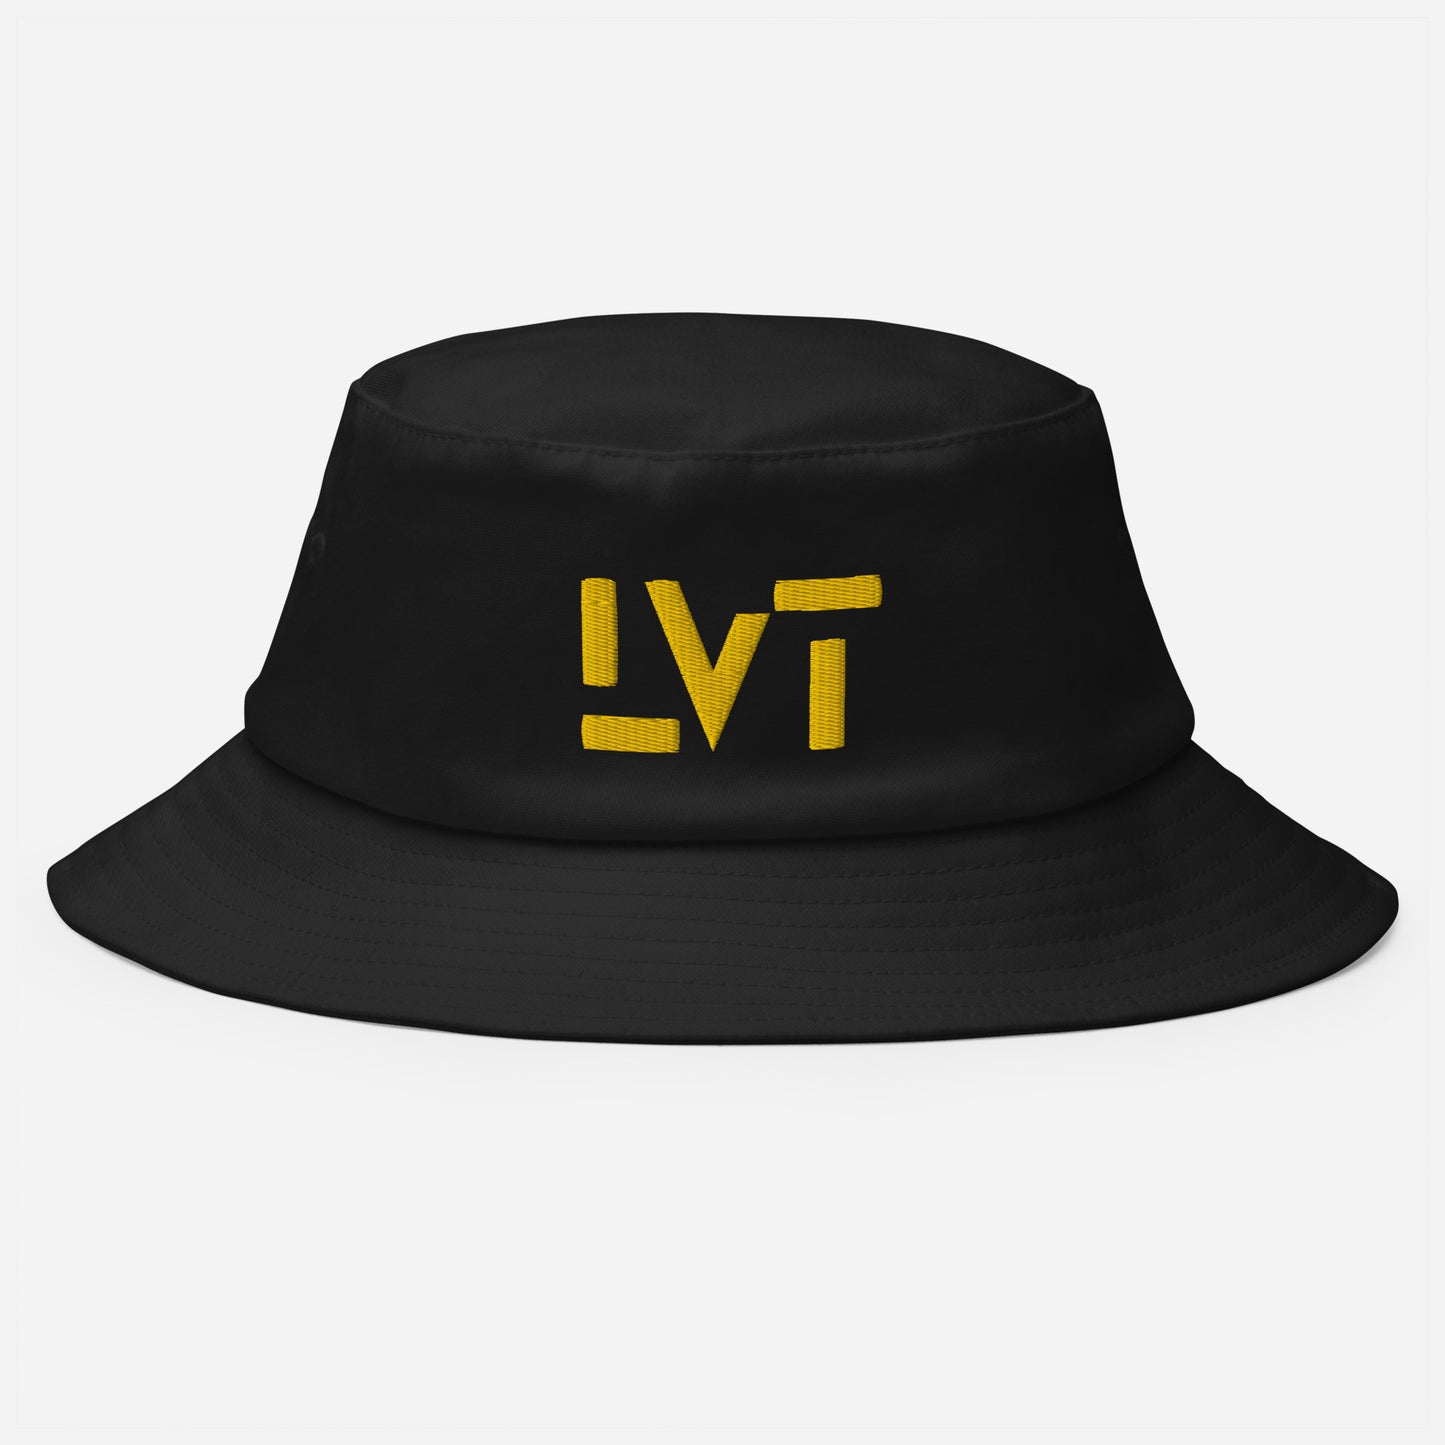 LVT Stencil Bucket Hat